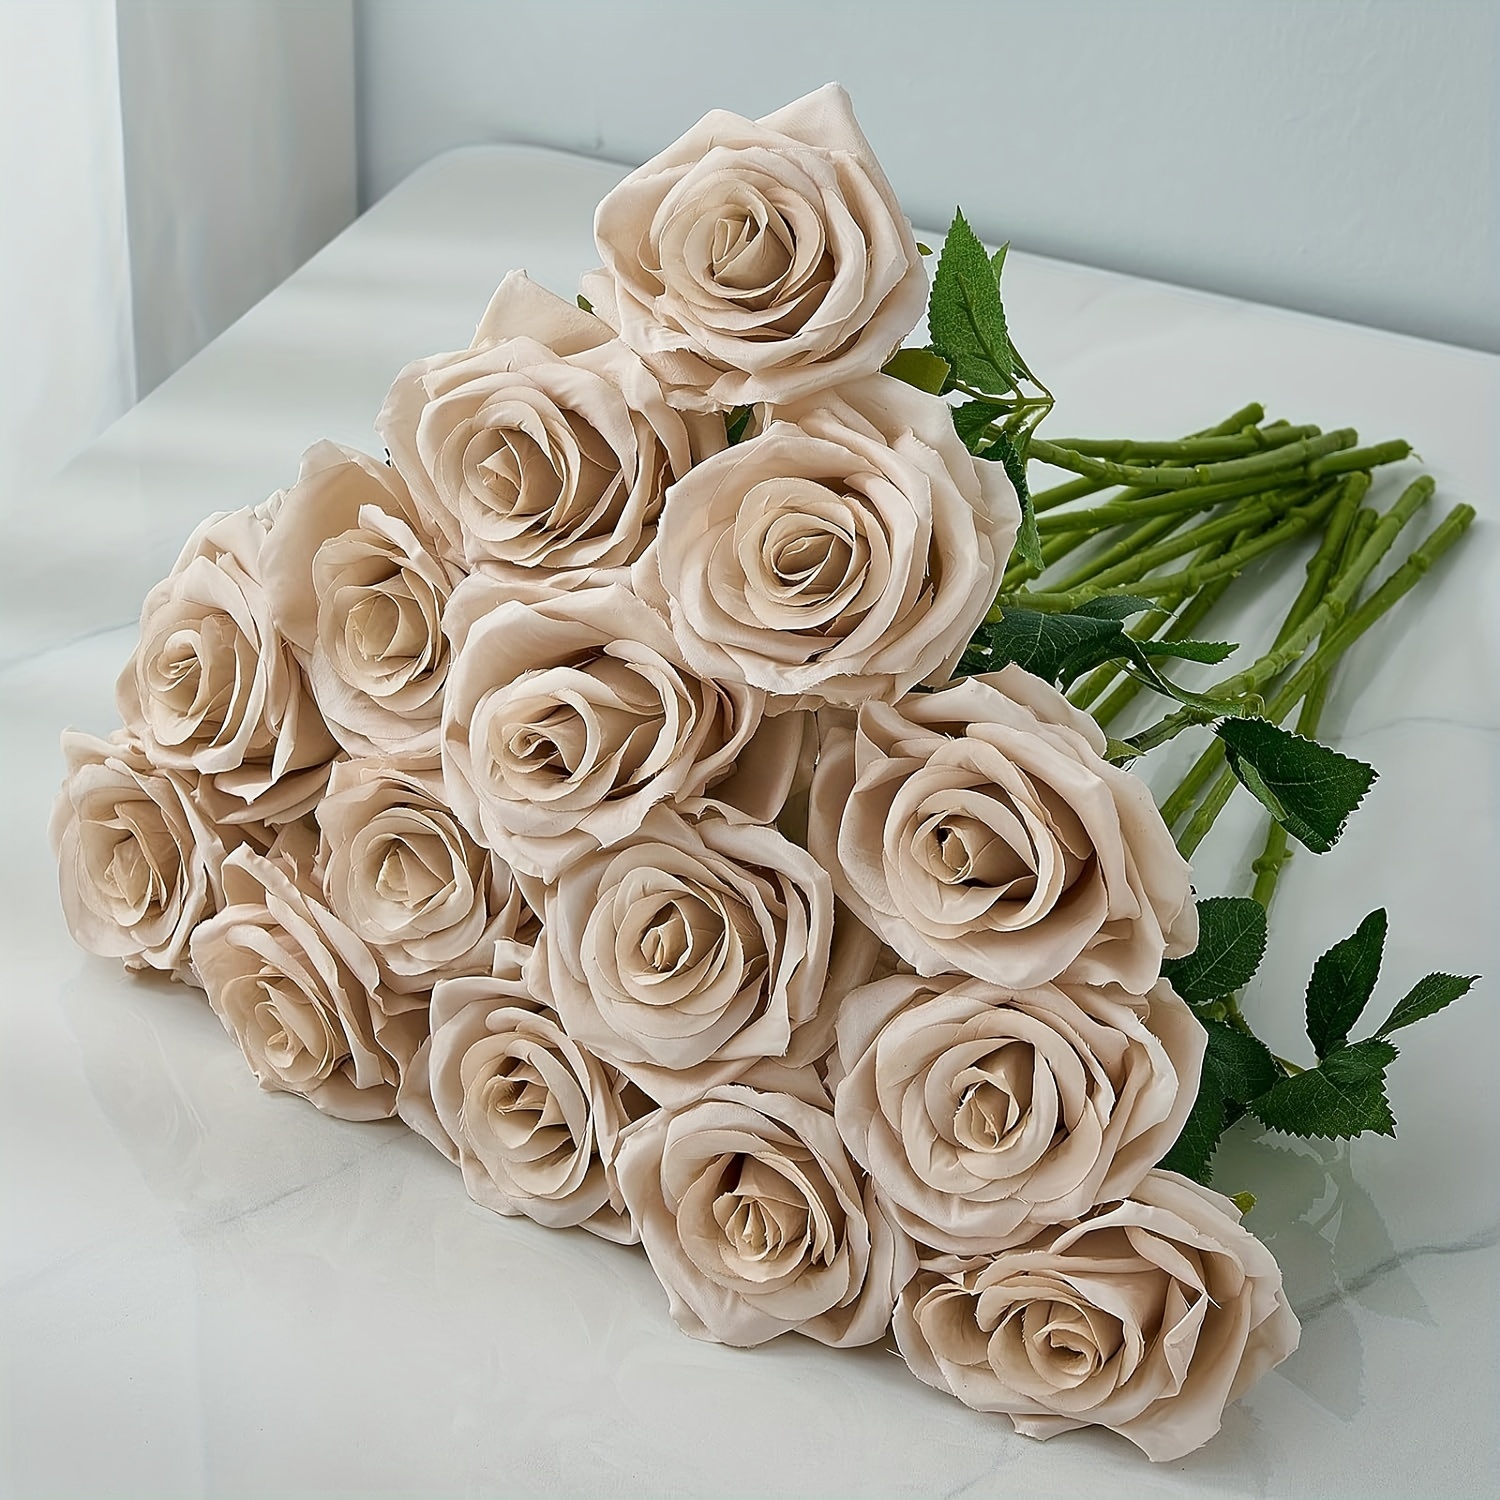 

6pcs Nude Fake Roses Artificial Silk Flowers Faux Rose Flowers, Long Stems Bouquet For Arrangement Wedding Centerpiece Party Home Kitchen Decor